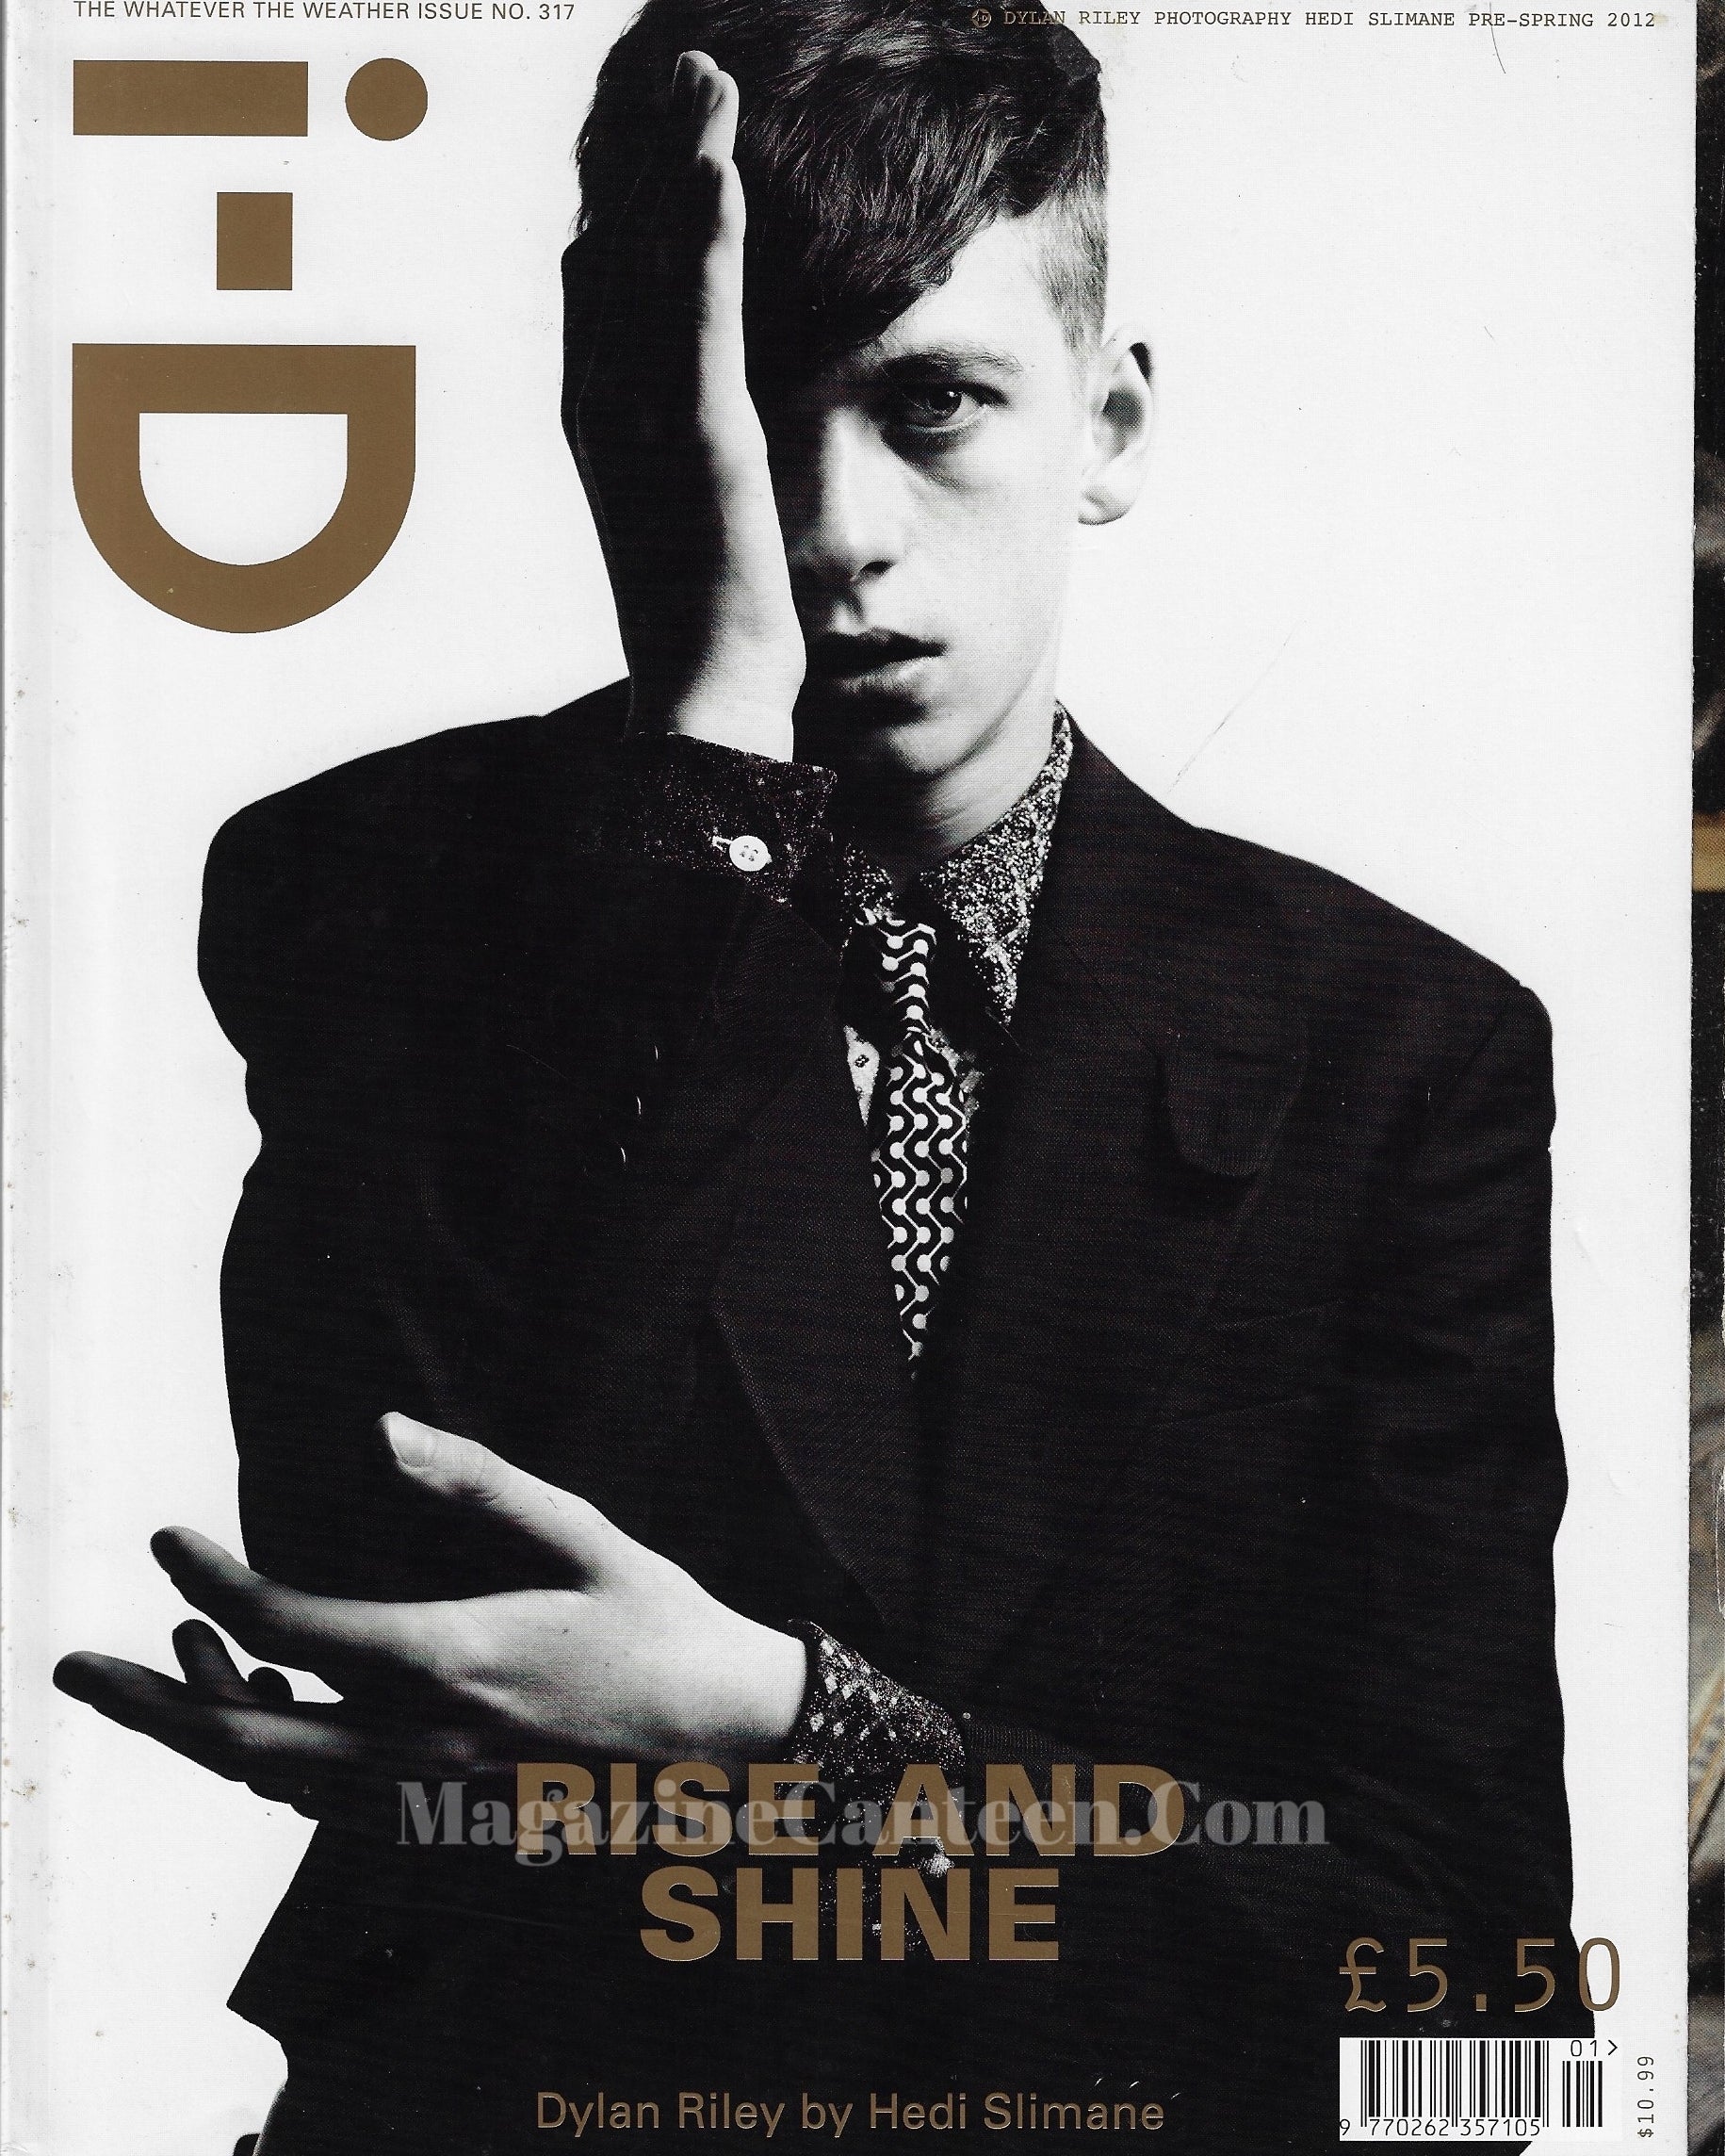 I-D Magazine 317 - Dylan Riley 2012